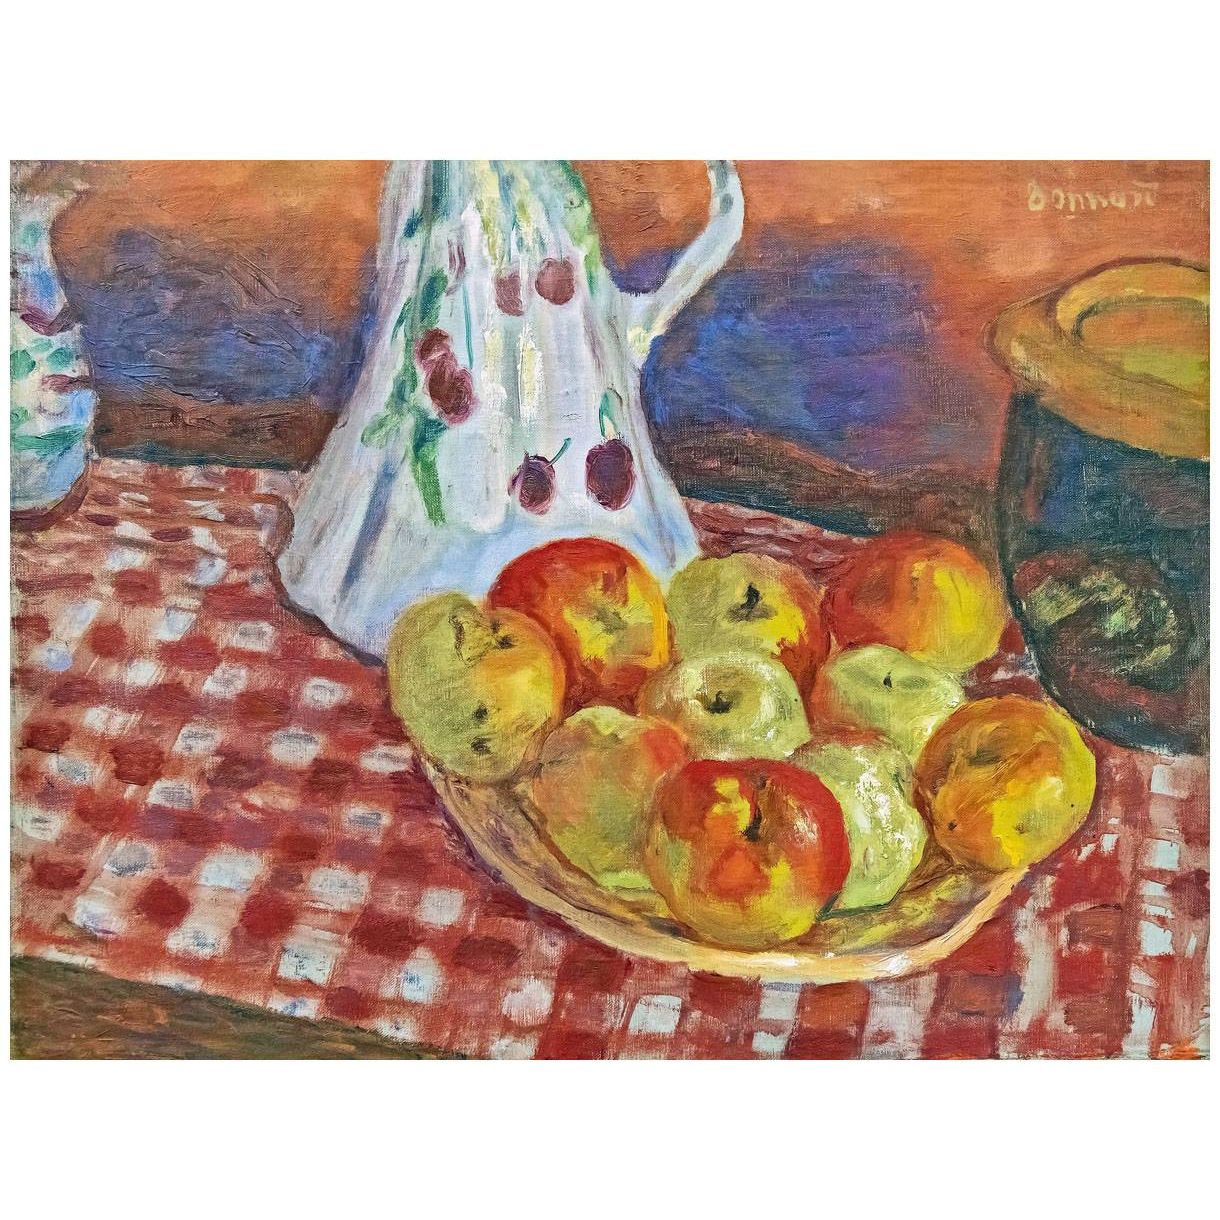 Pierre Bonnard. Les pommes rouges. 1920. Bemberg Foundation Toulouse